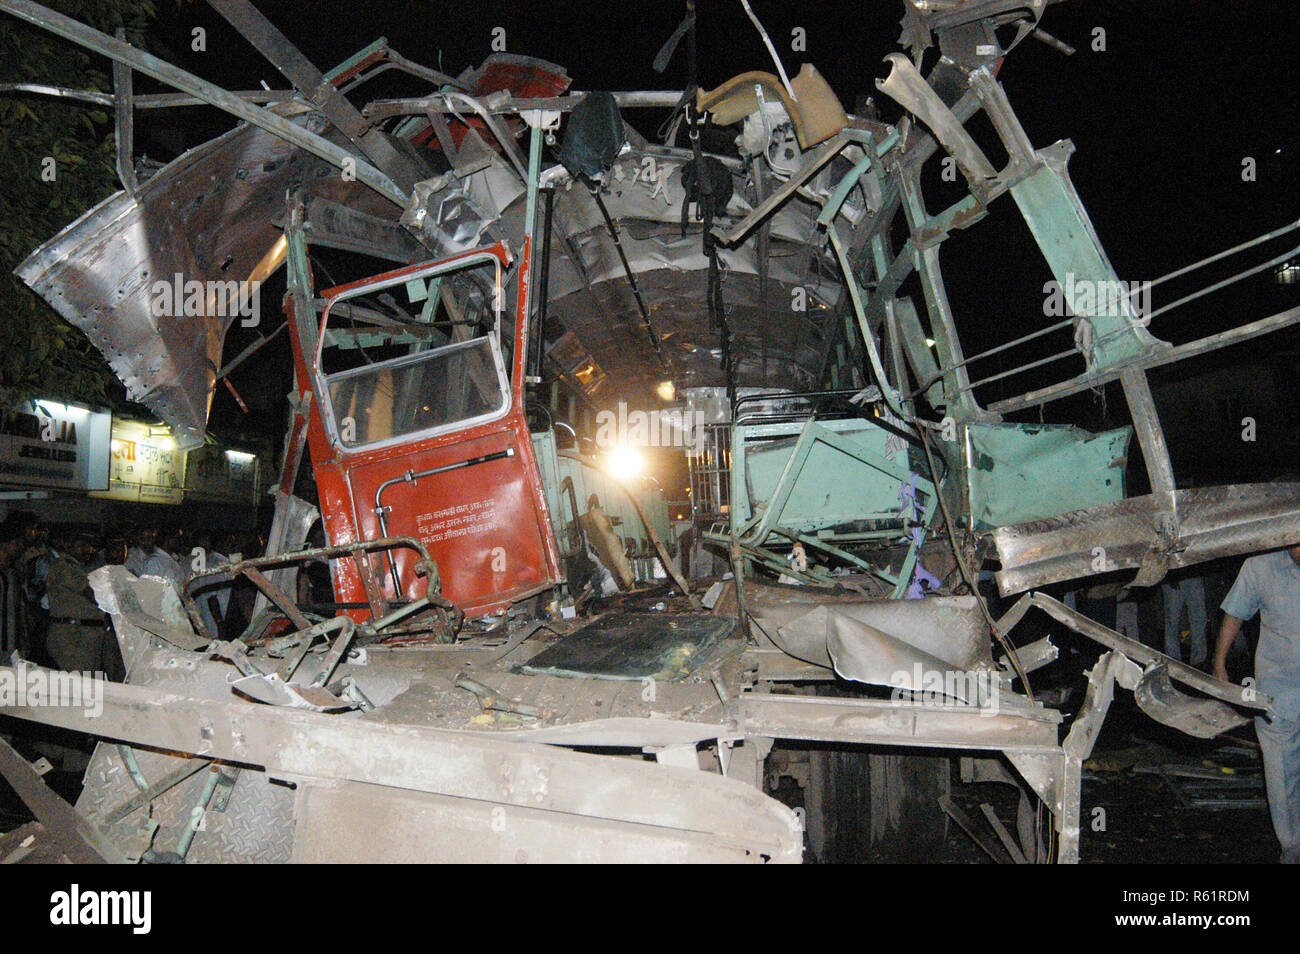 Bombenanschlag auf Bus in der Nähe von ghatkopar Telefon Exchange Fahrzeug Auto und Motorrad schwer beschädigt, Mumbai, Maharashtra, Indien. Stockfoto